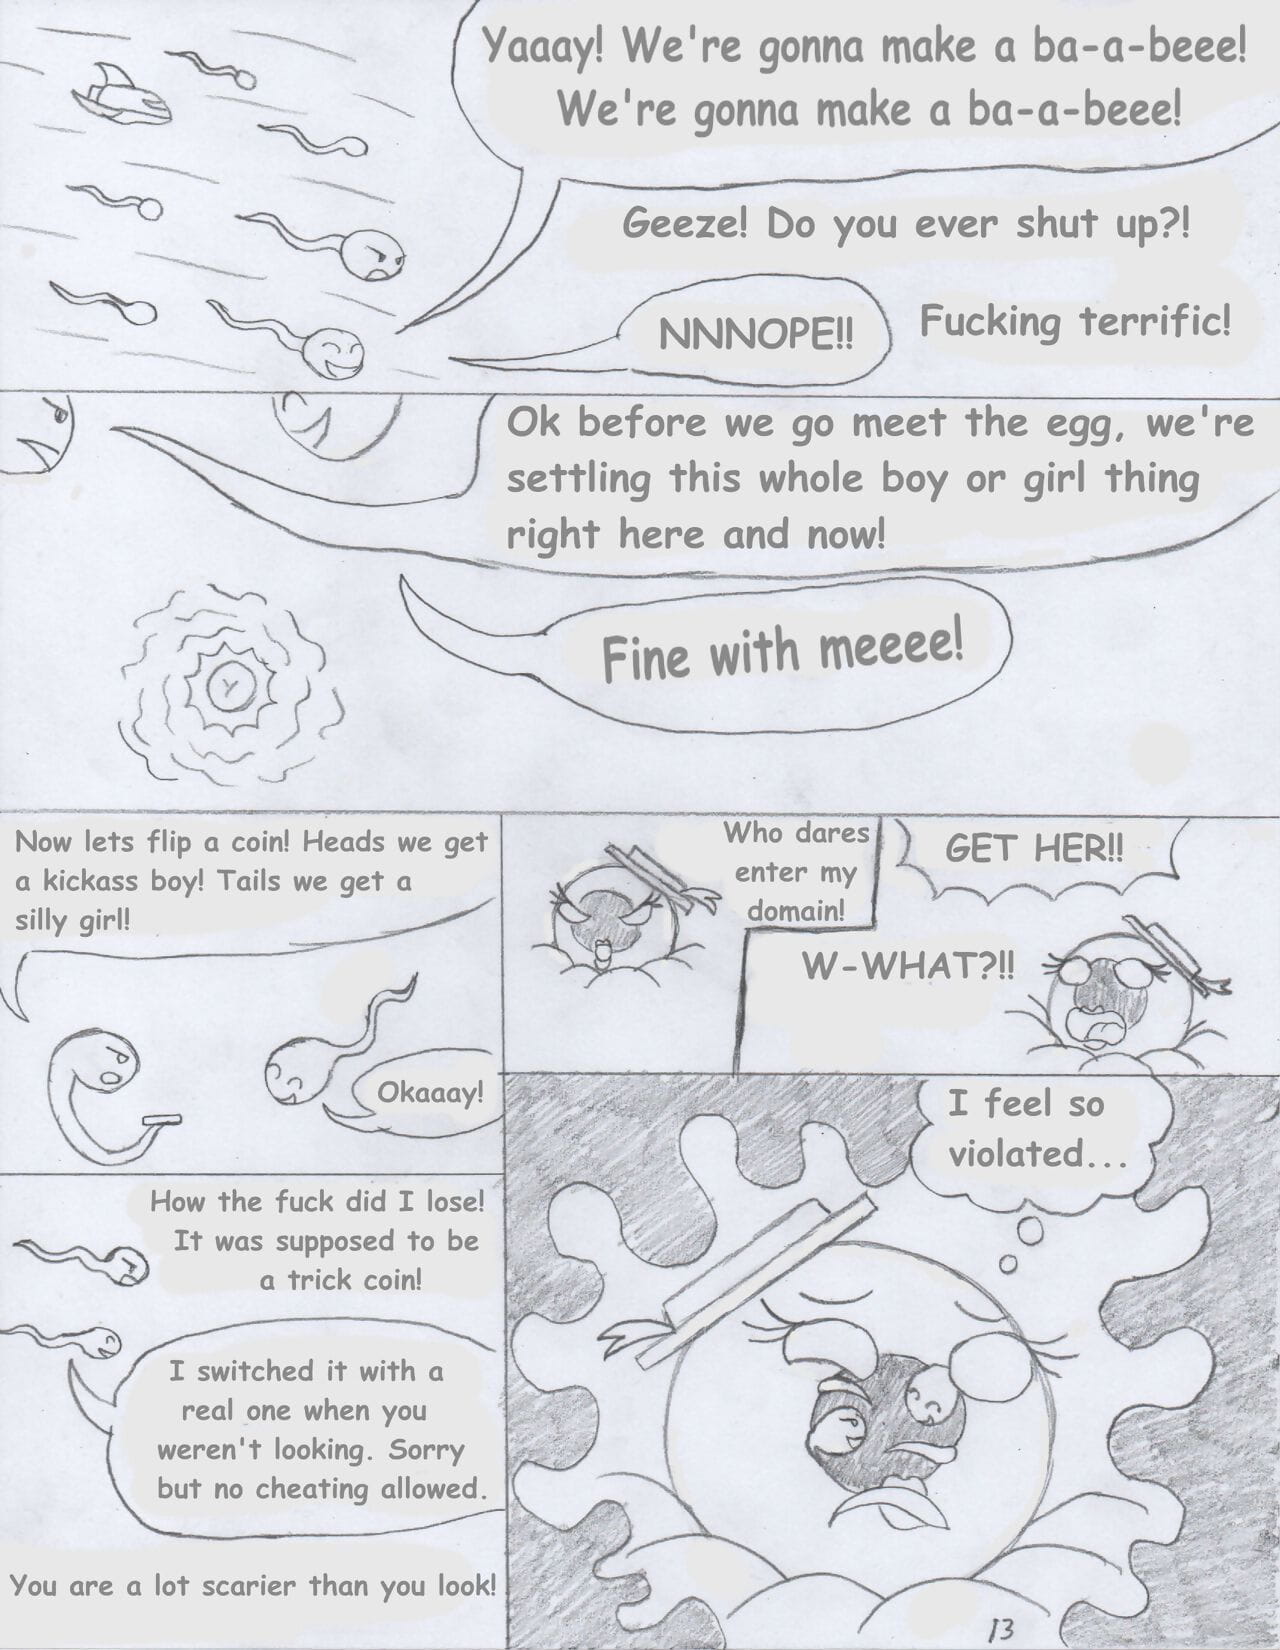 foxtide888 草图 漫画 画廊 2 一部分 3 page 1